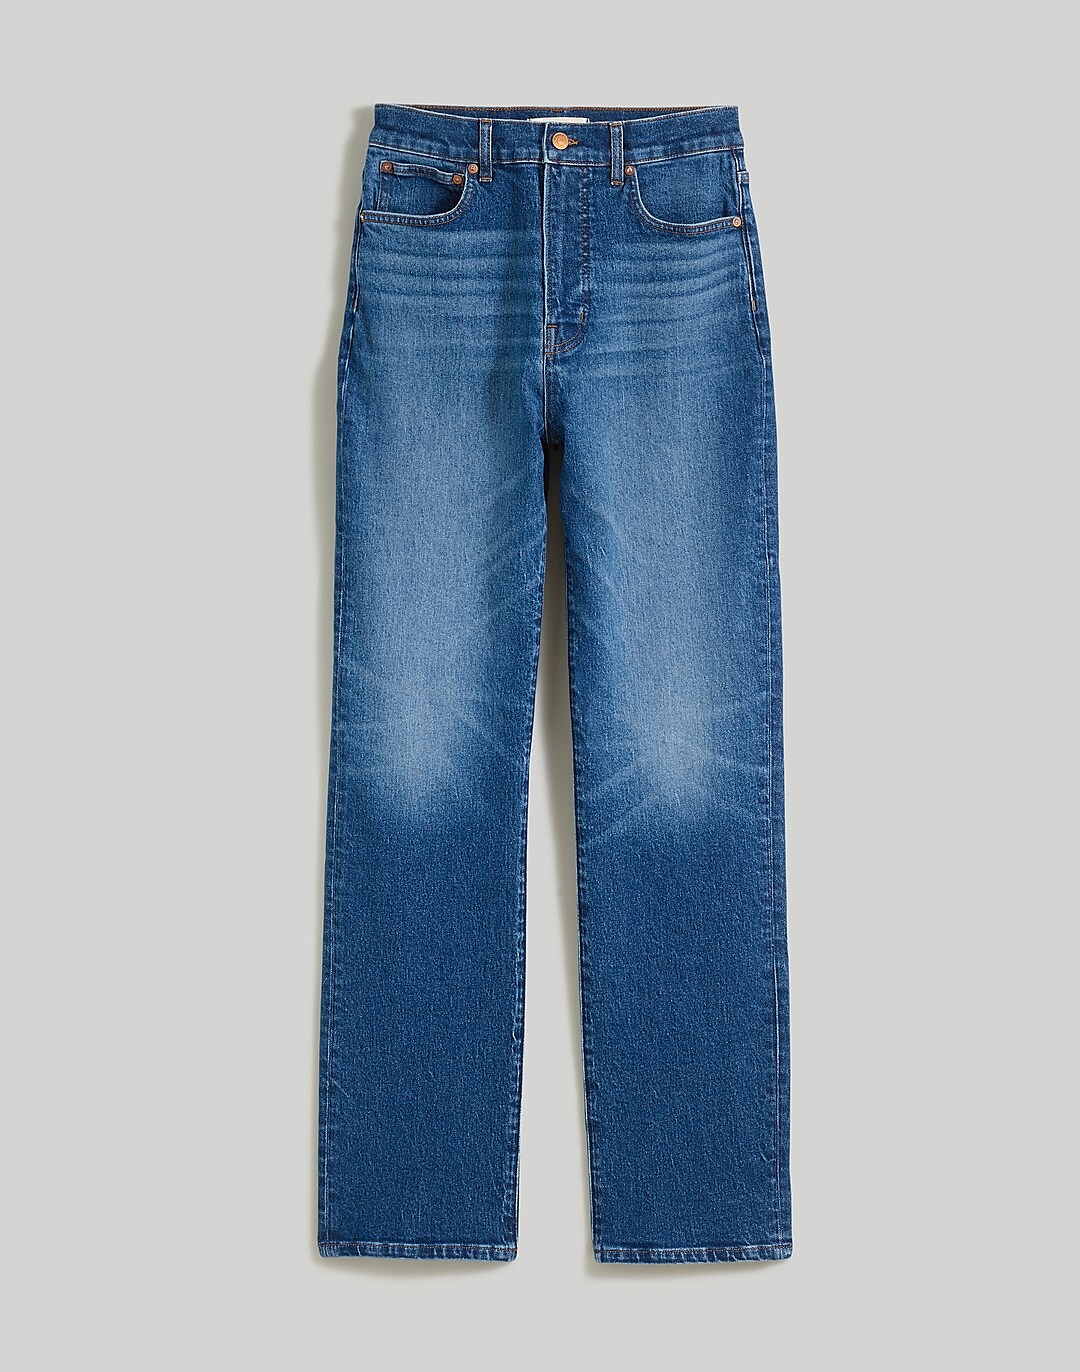 SDL-1014 90s Wash Jeans